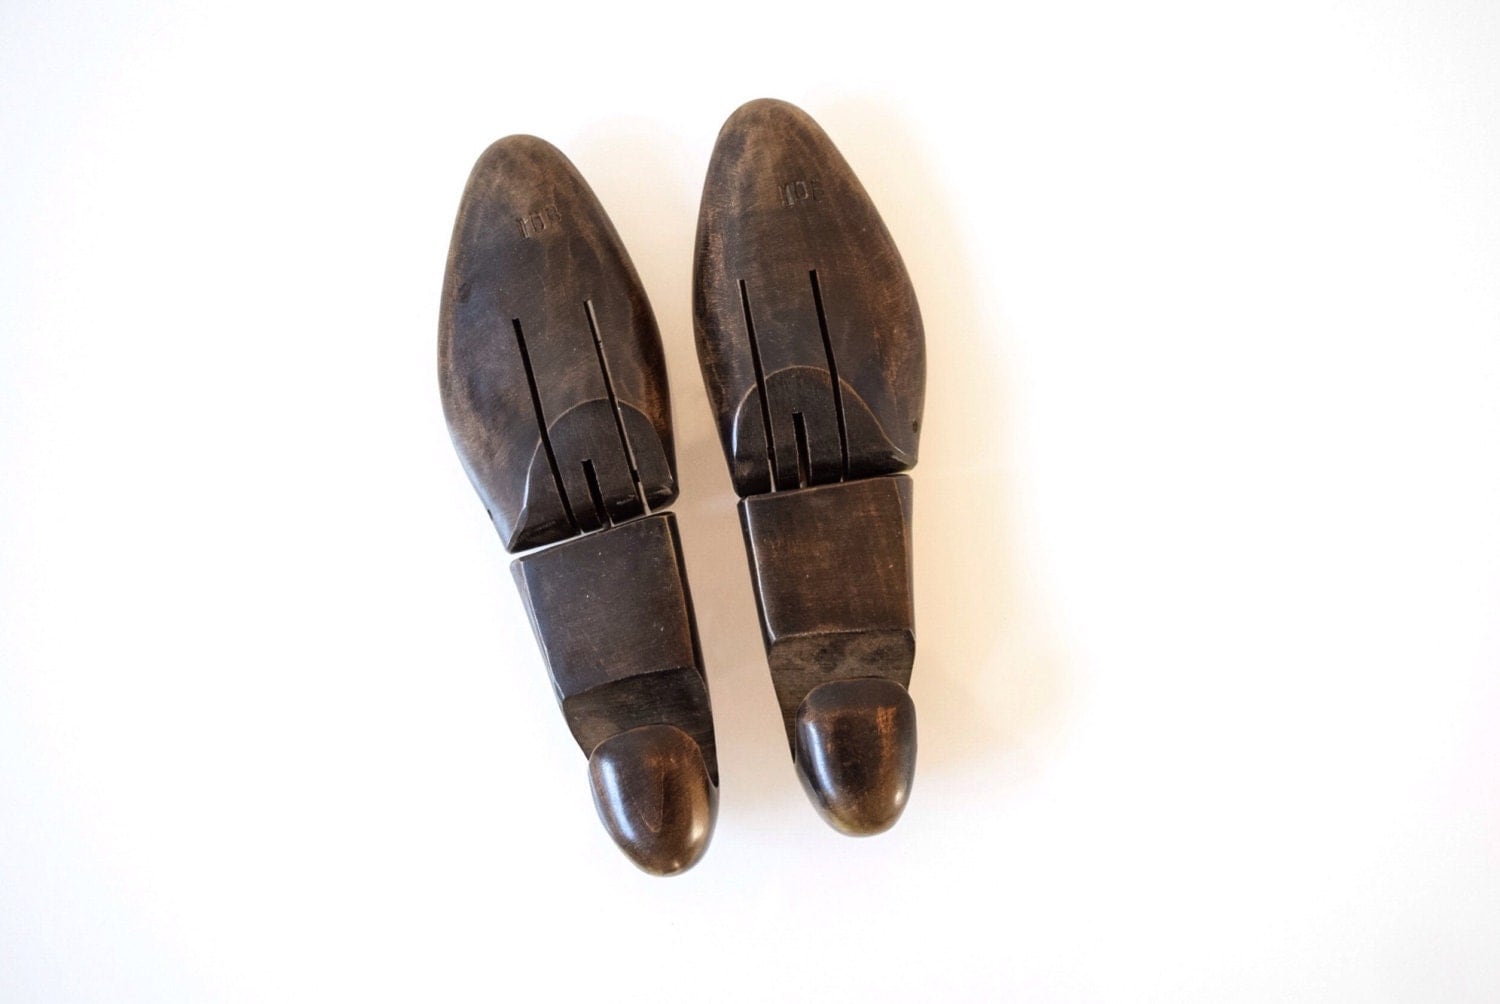 shoe forms shoe lasts wooden shoe forms wood shoe lasts